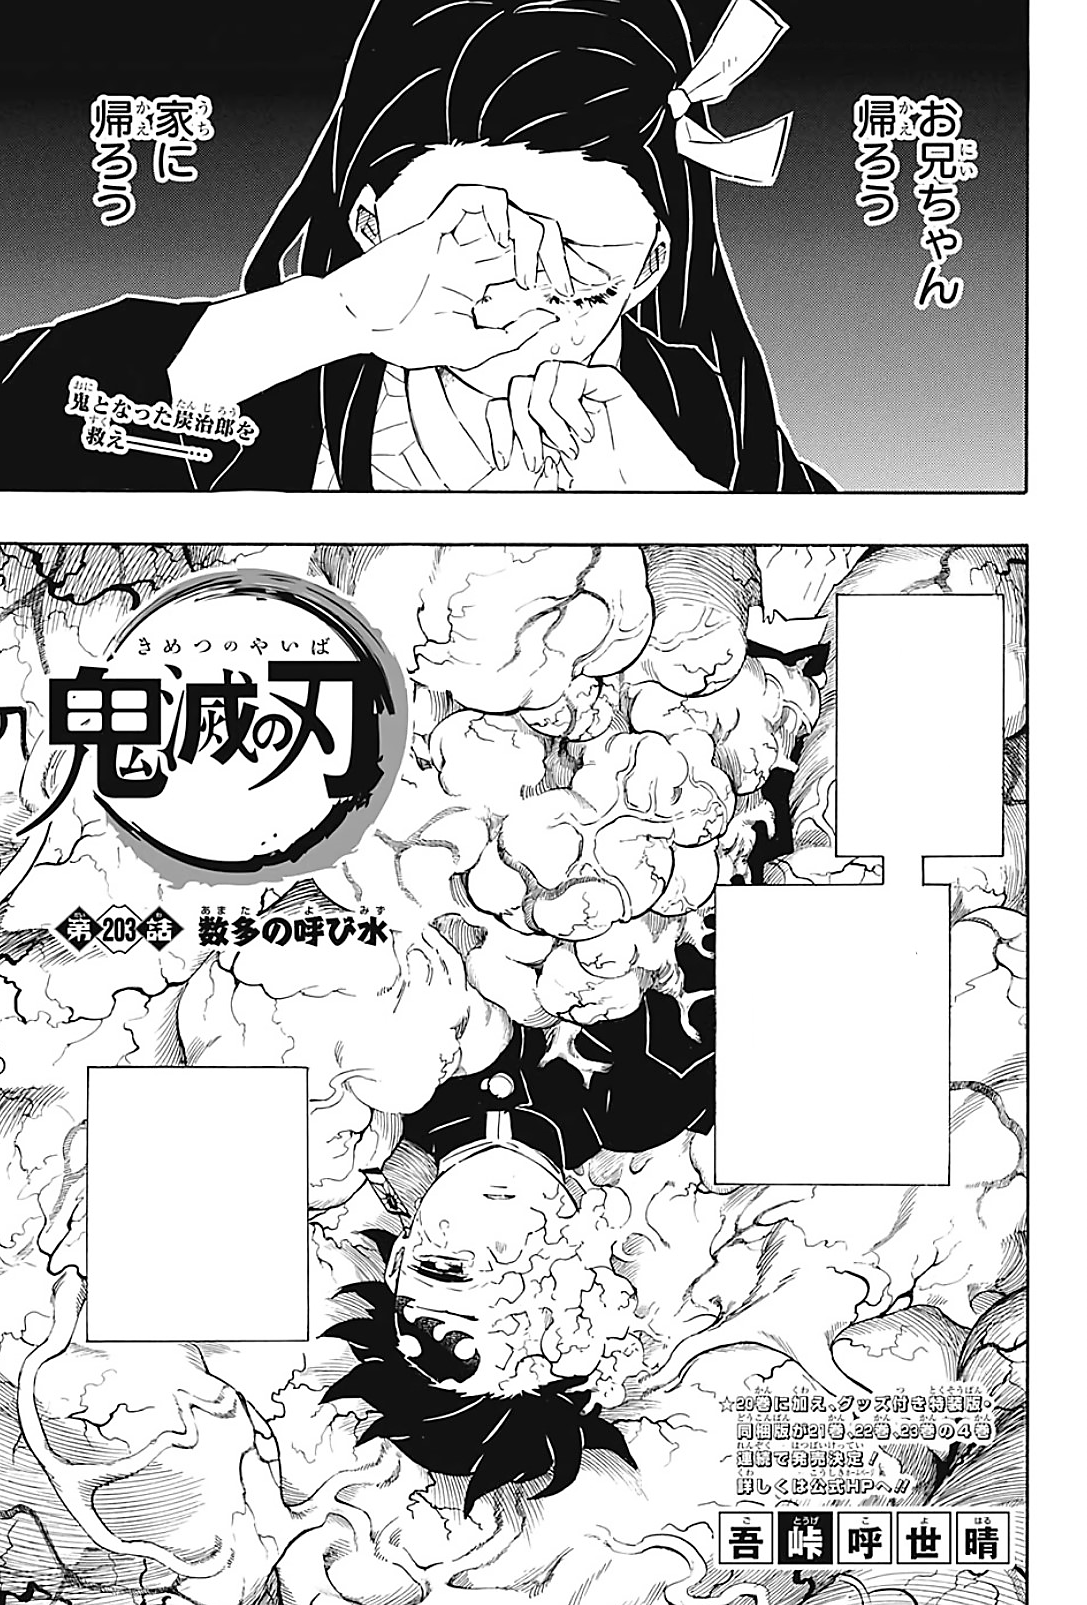 Demon Slayer: Kimetsu no Yaiba Chapter 203 - Kimetsu no Yaiba